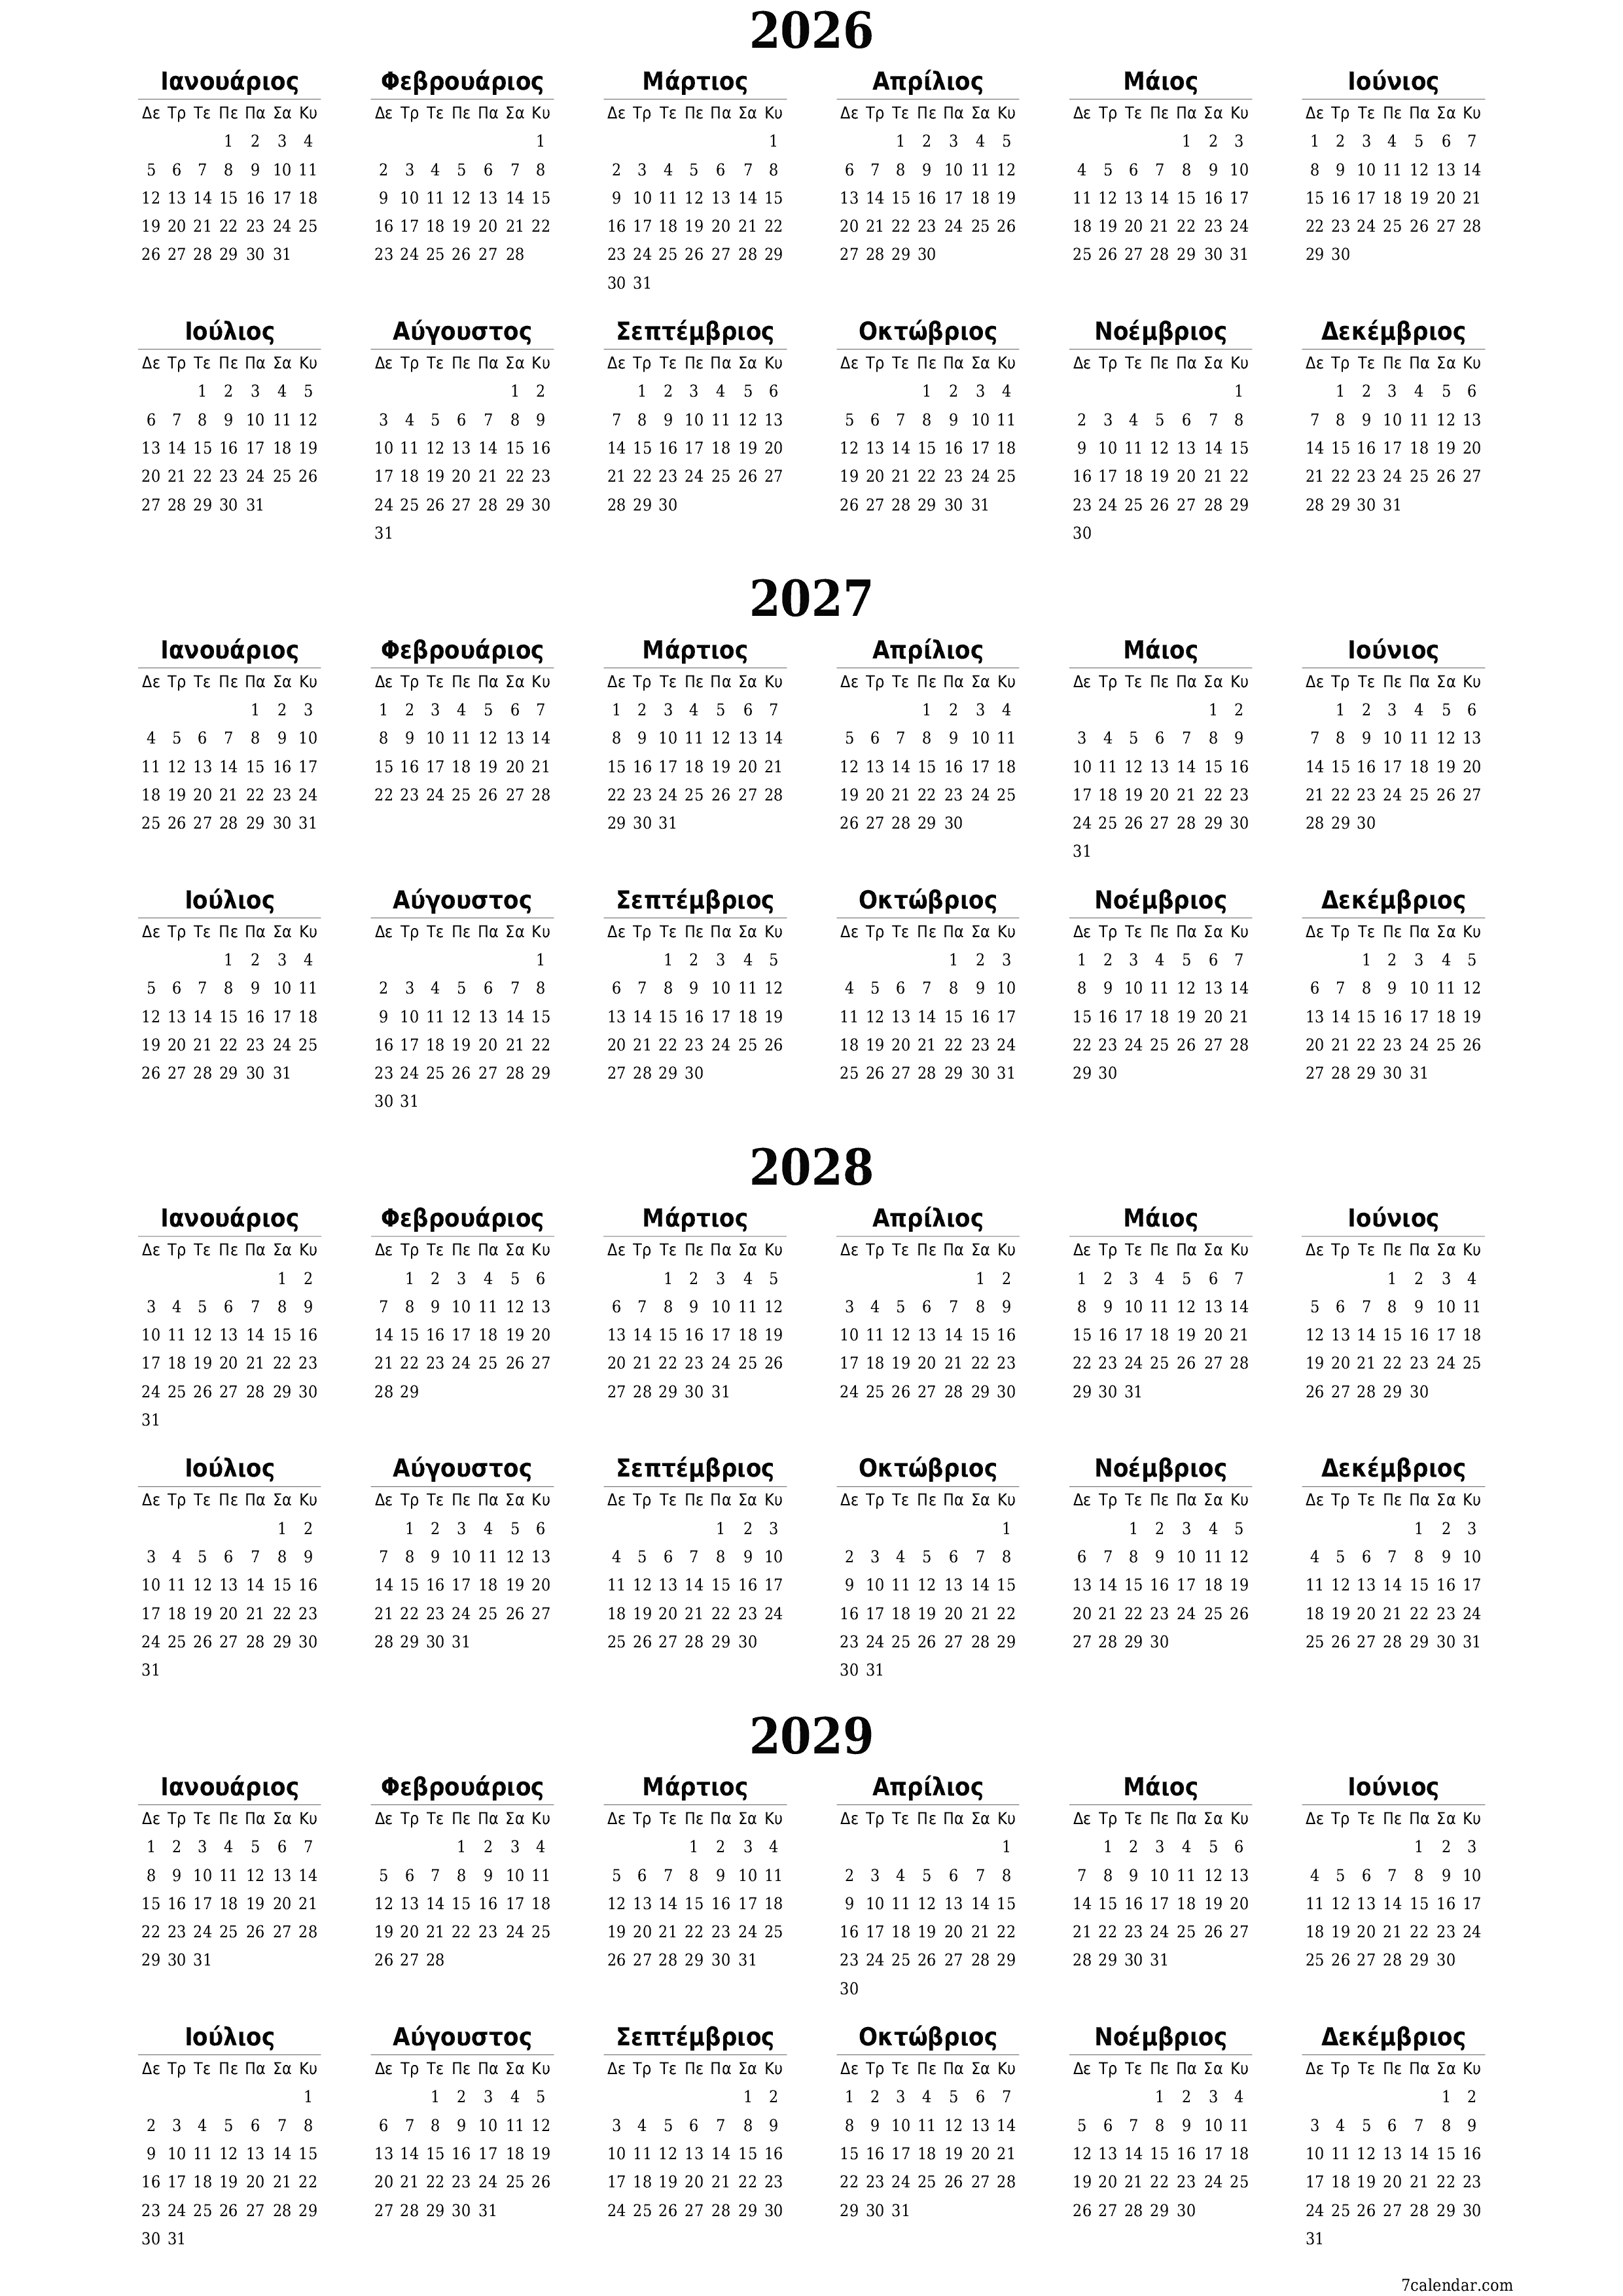 εκτυπώσιμο ημερολόγιο ημερολόγιο τοίχου πρότυπο ημερολογίου δωρεάν ημερολόγιοκατακόρυφος Ετήσιο Ημερολόγιο Μάρτιος (Μαρ) 2026